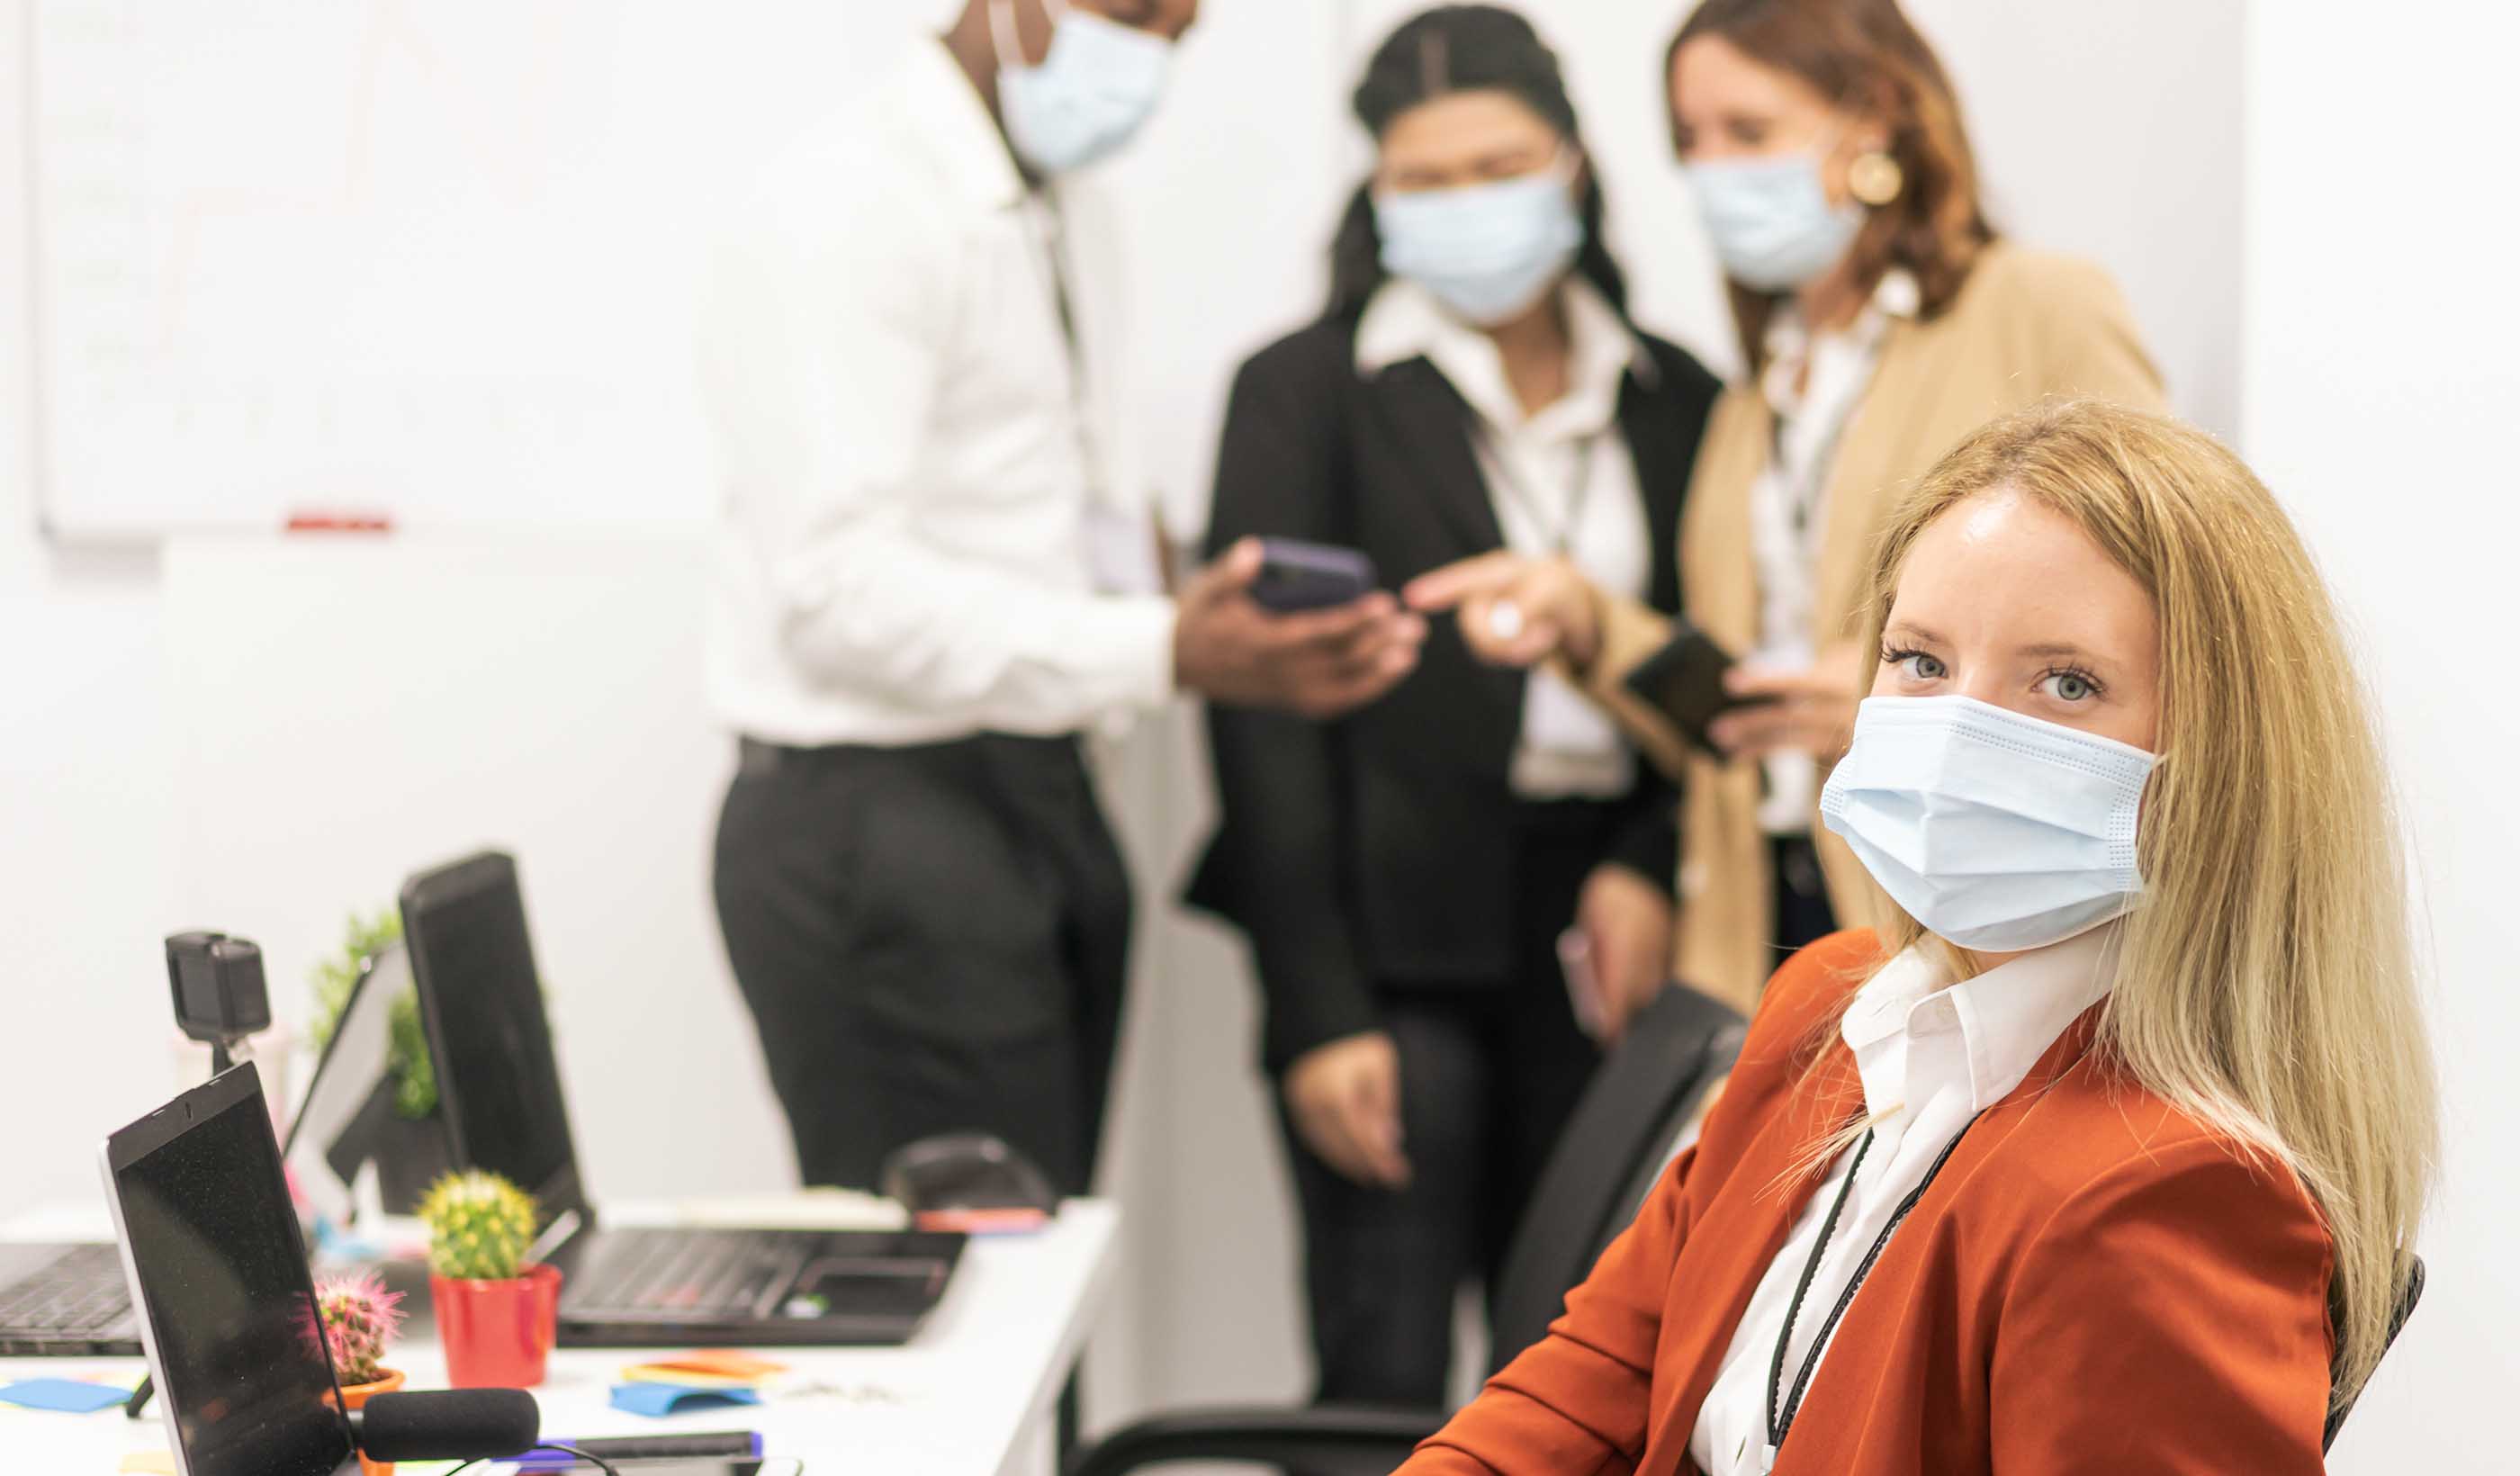 Valutare e gestire lo stress lavoro correlato post pandemia